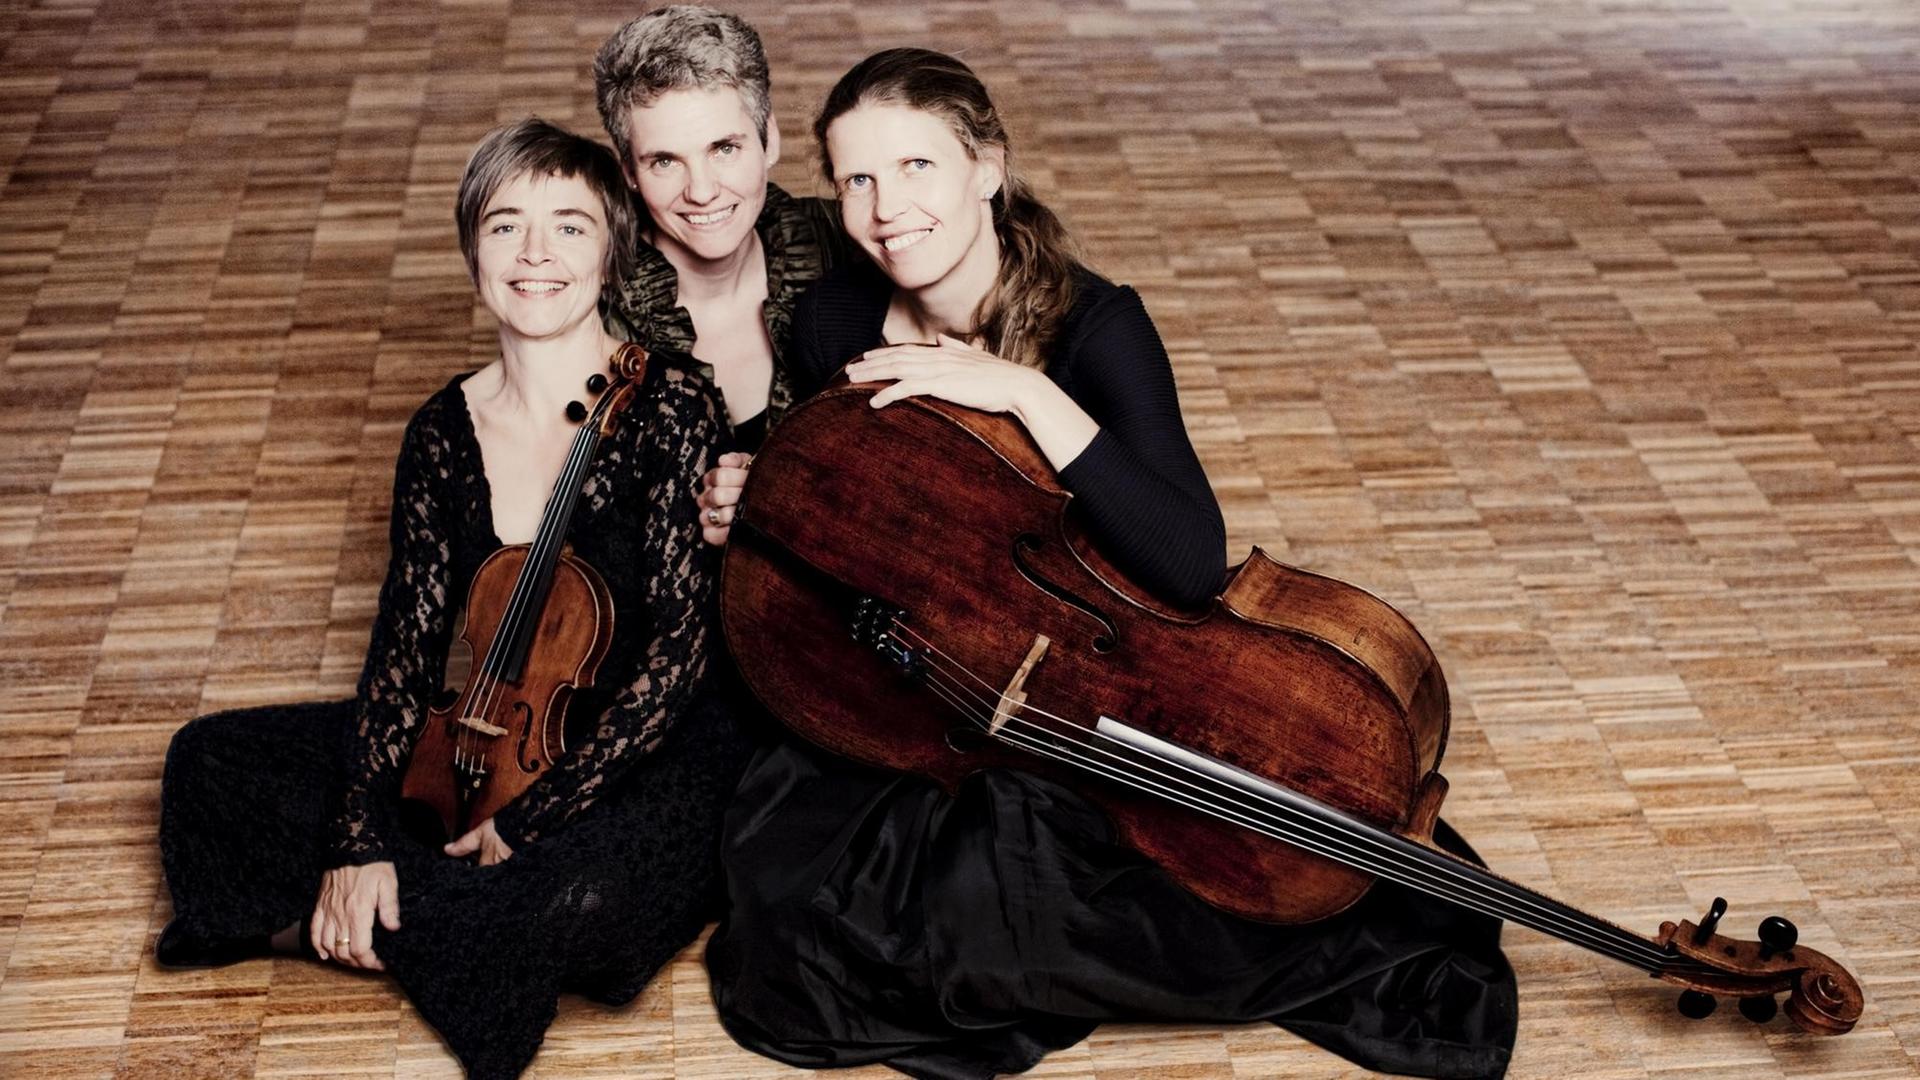 Drei Frauen sitzen schwarz gekleidet auf dem Boden. Eine hält eine Geige in der Hand, eine andere ein Cello. Zusammen bilden sie das Klaviertrio "Trio Vivente".